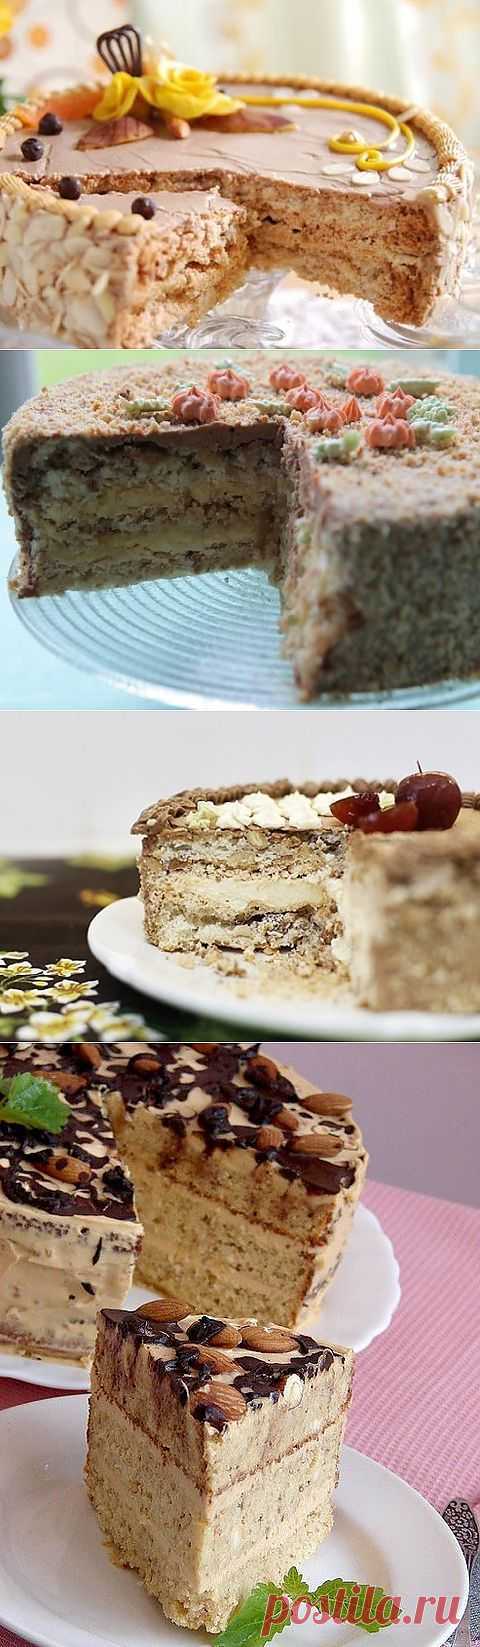 Киевский торт - 5 рецептов с фото.